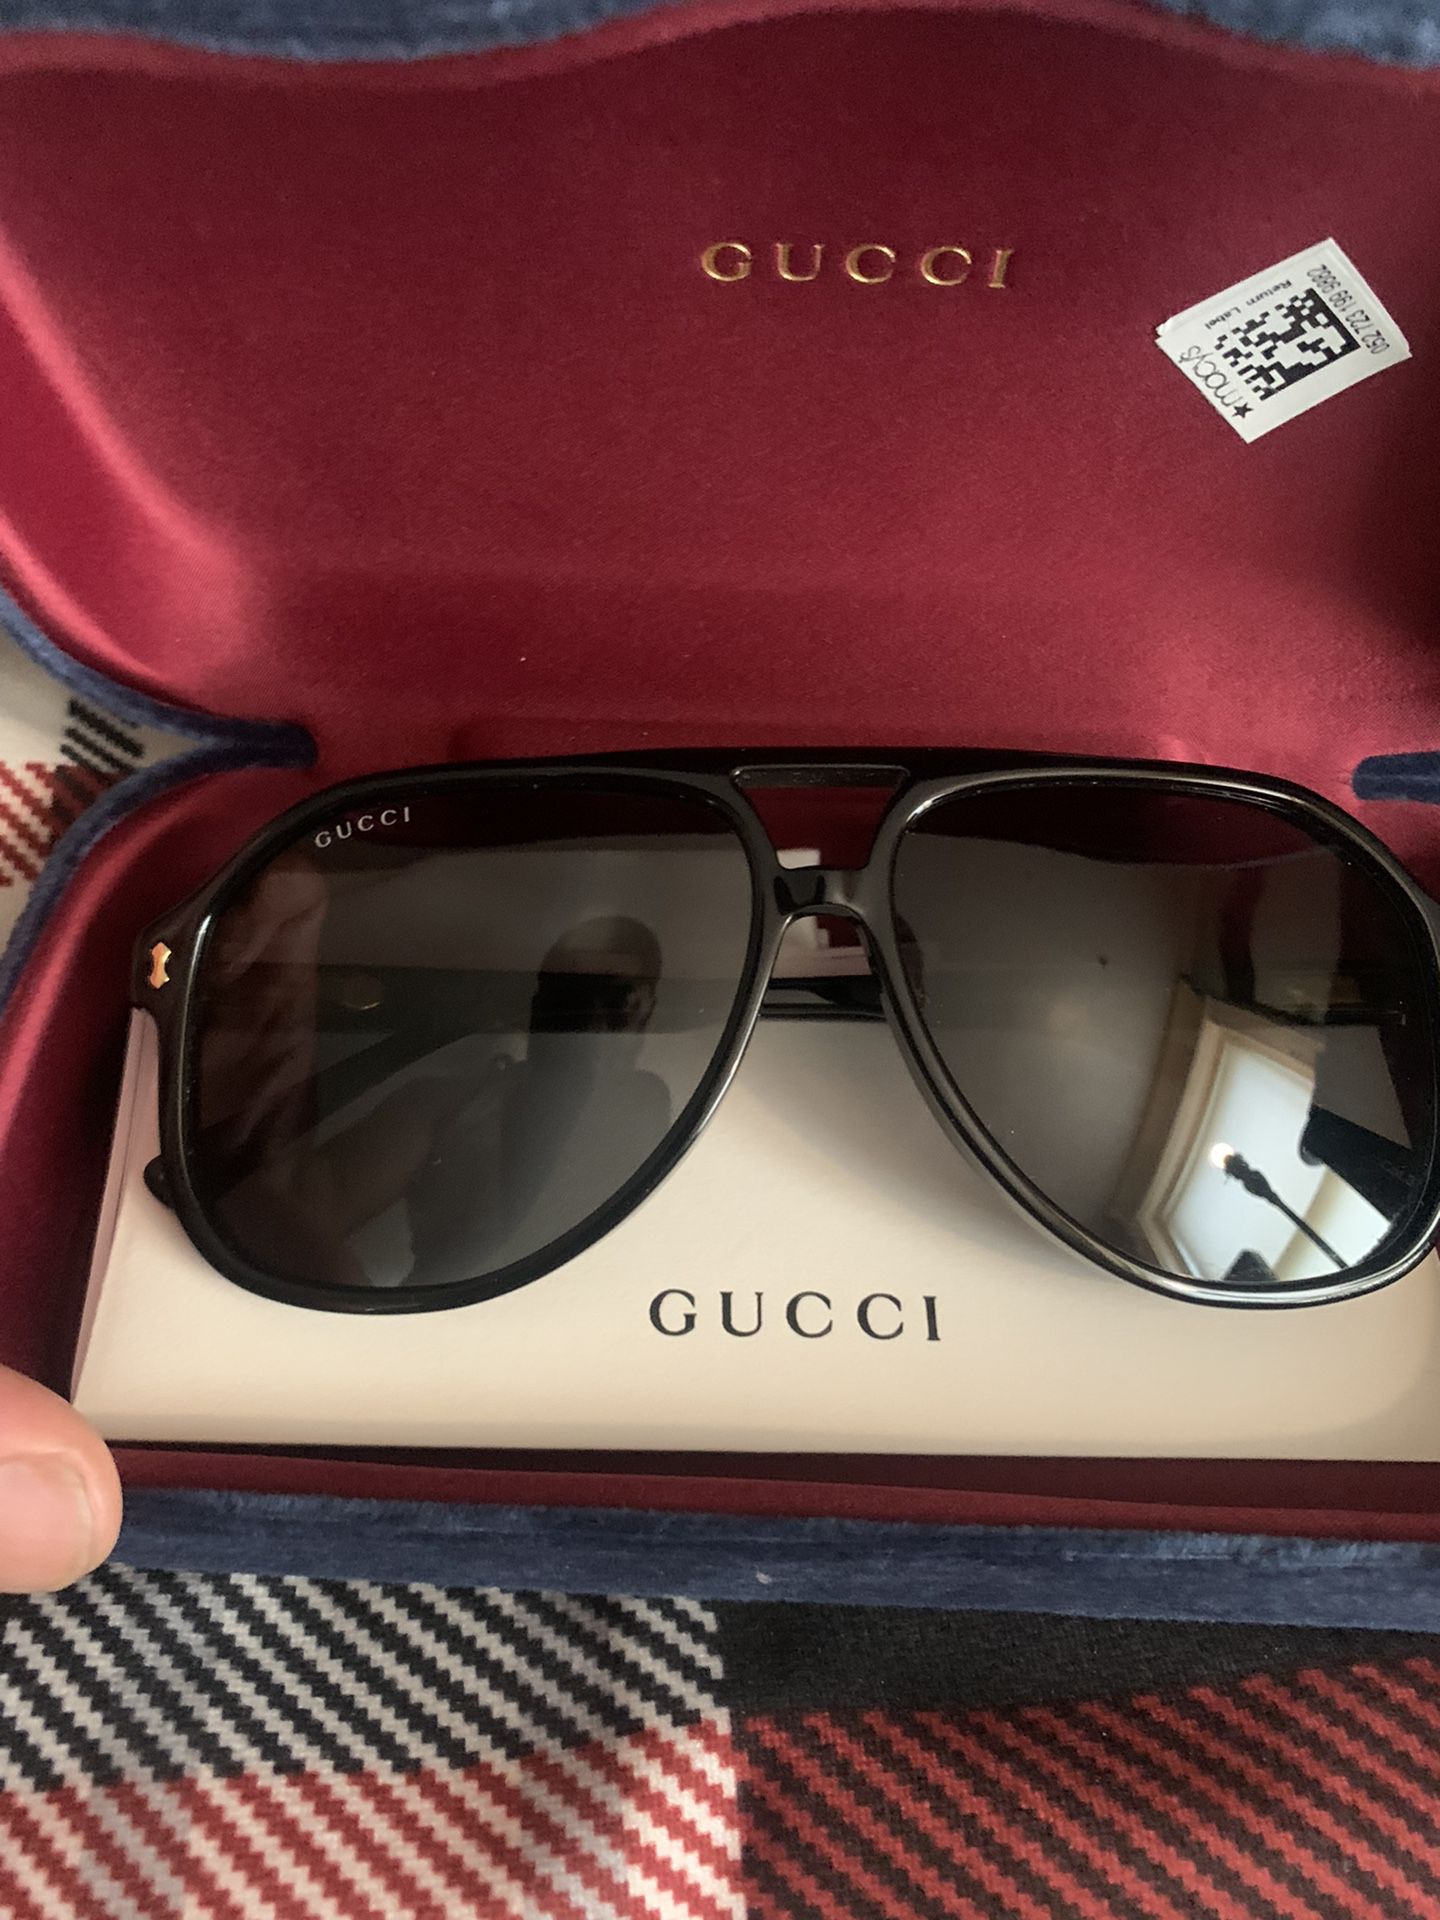 Authentic Gucci Sunglasses